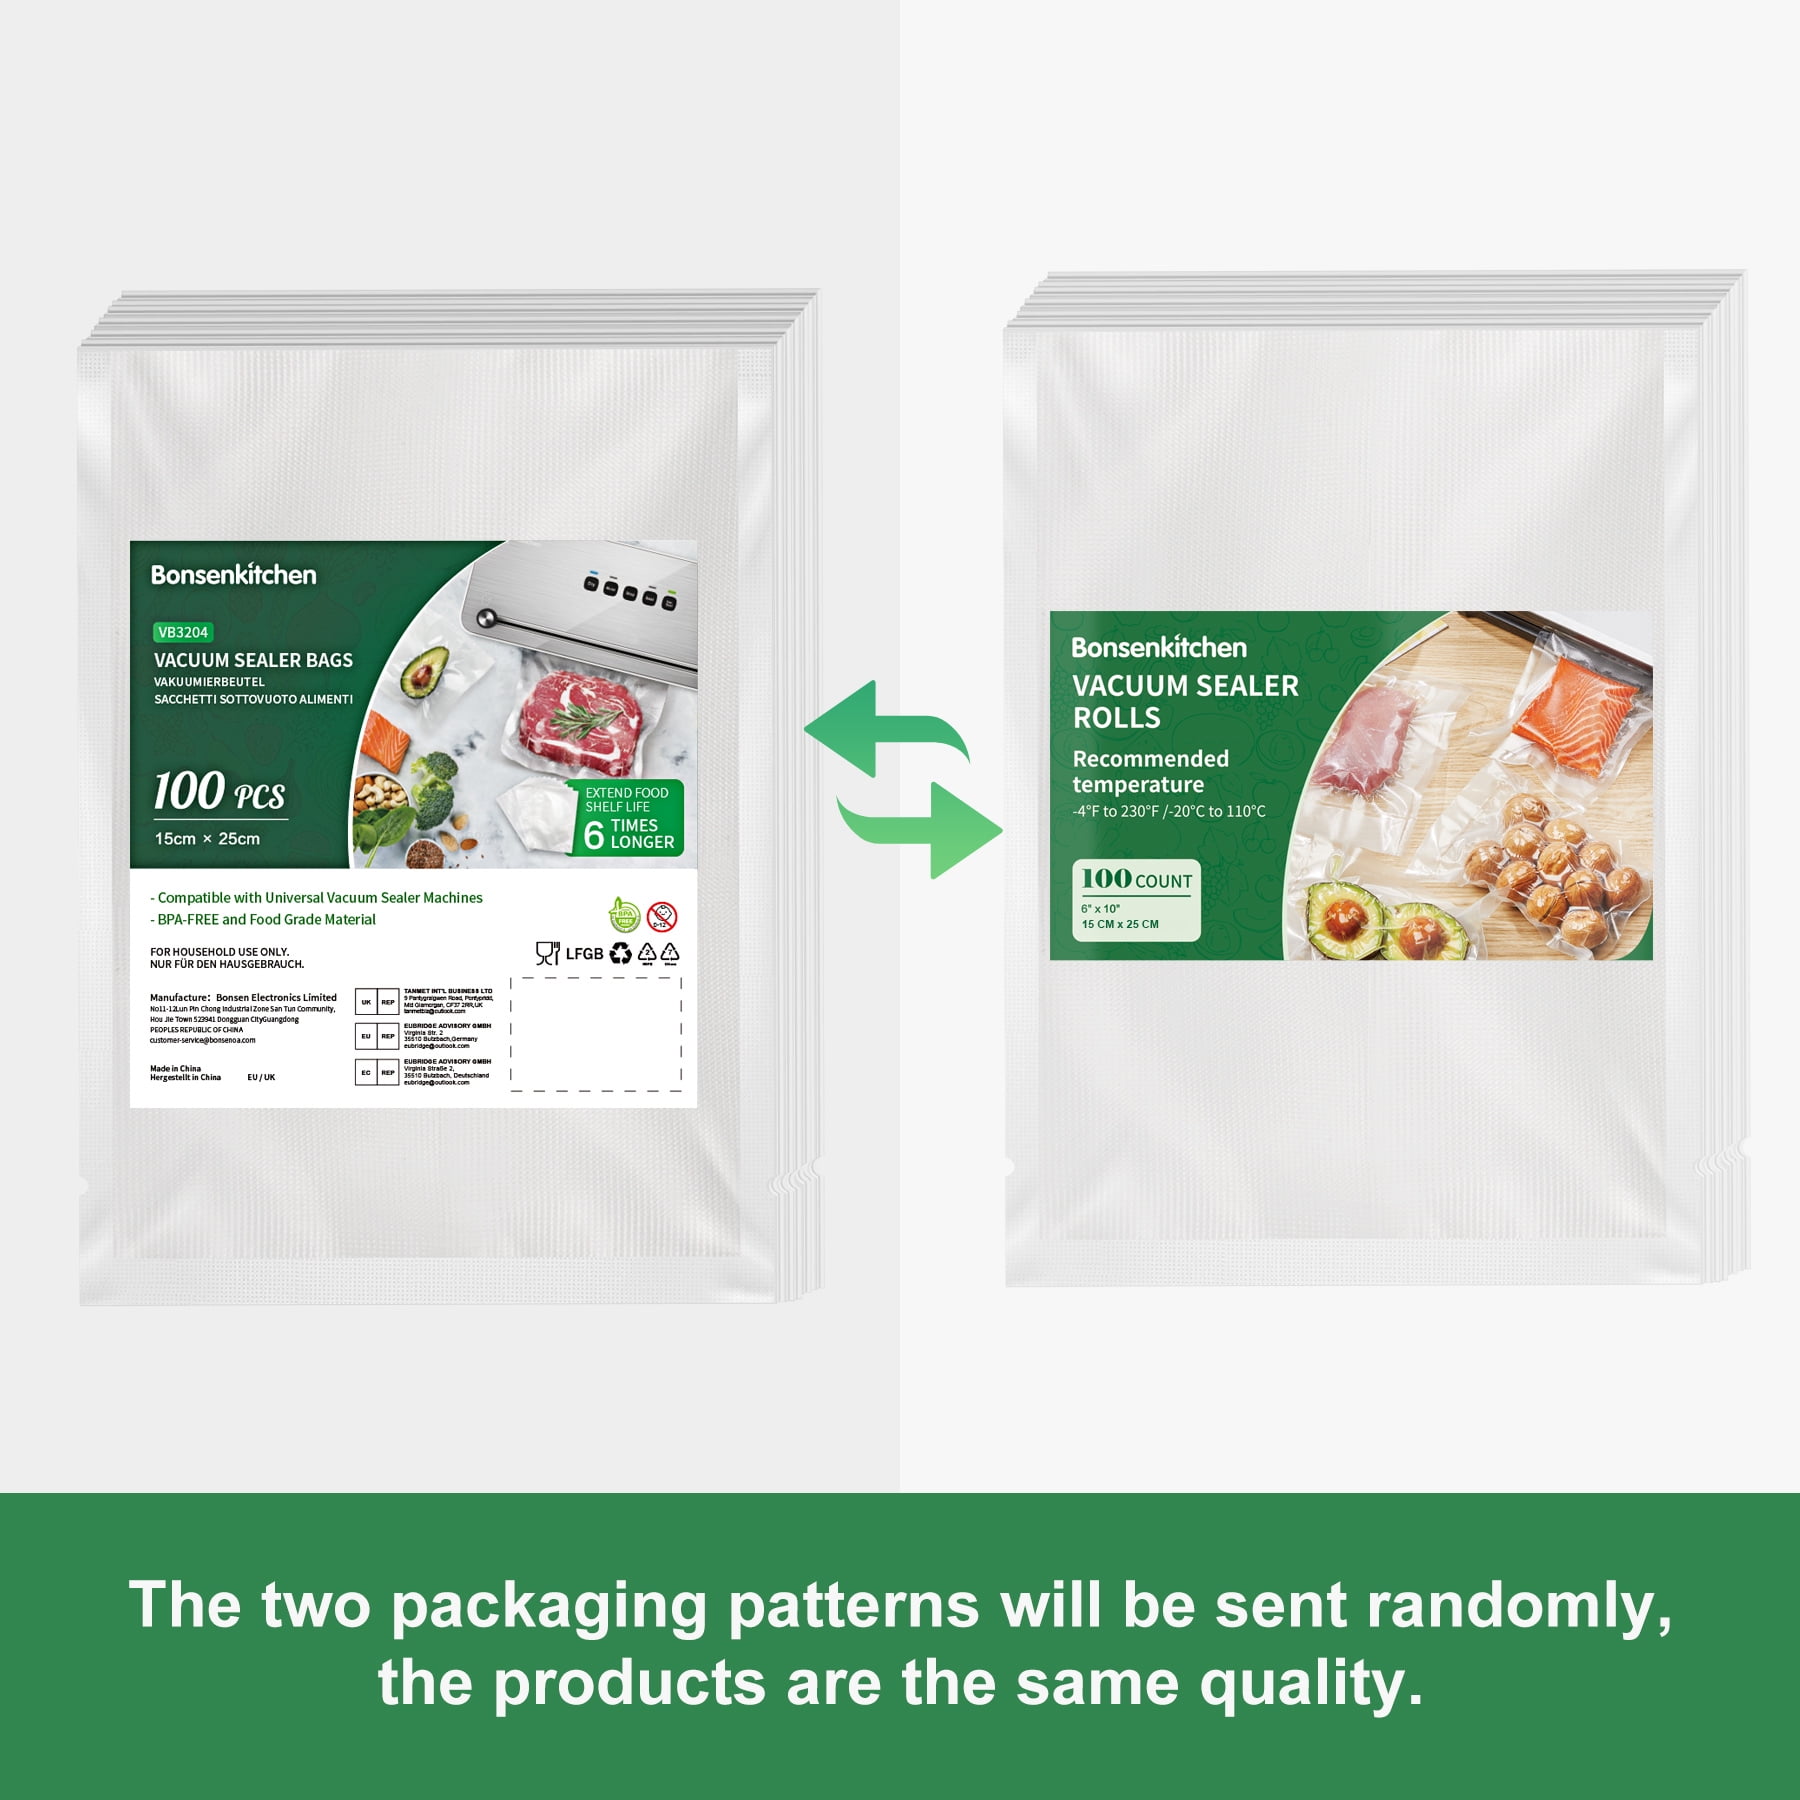 PrimalTek 6” x 10” Pre-Cut Vacuum Bags – 100 Pint Bags for Food  Preservation – BPA-Free Vacuum Sealer Bags, Microwave, Freezer and Boil  Safe